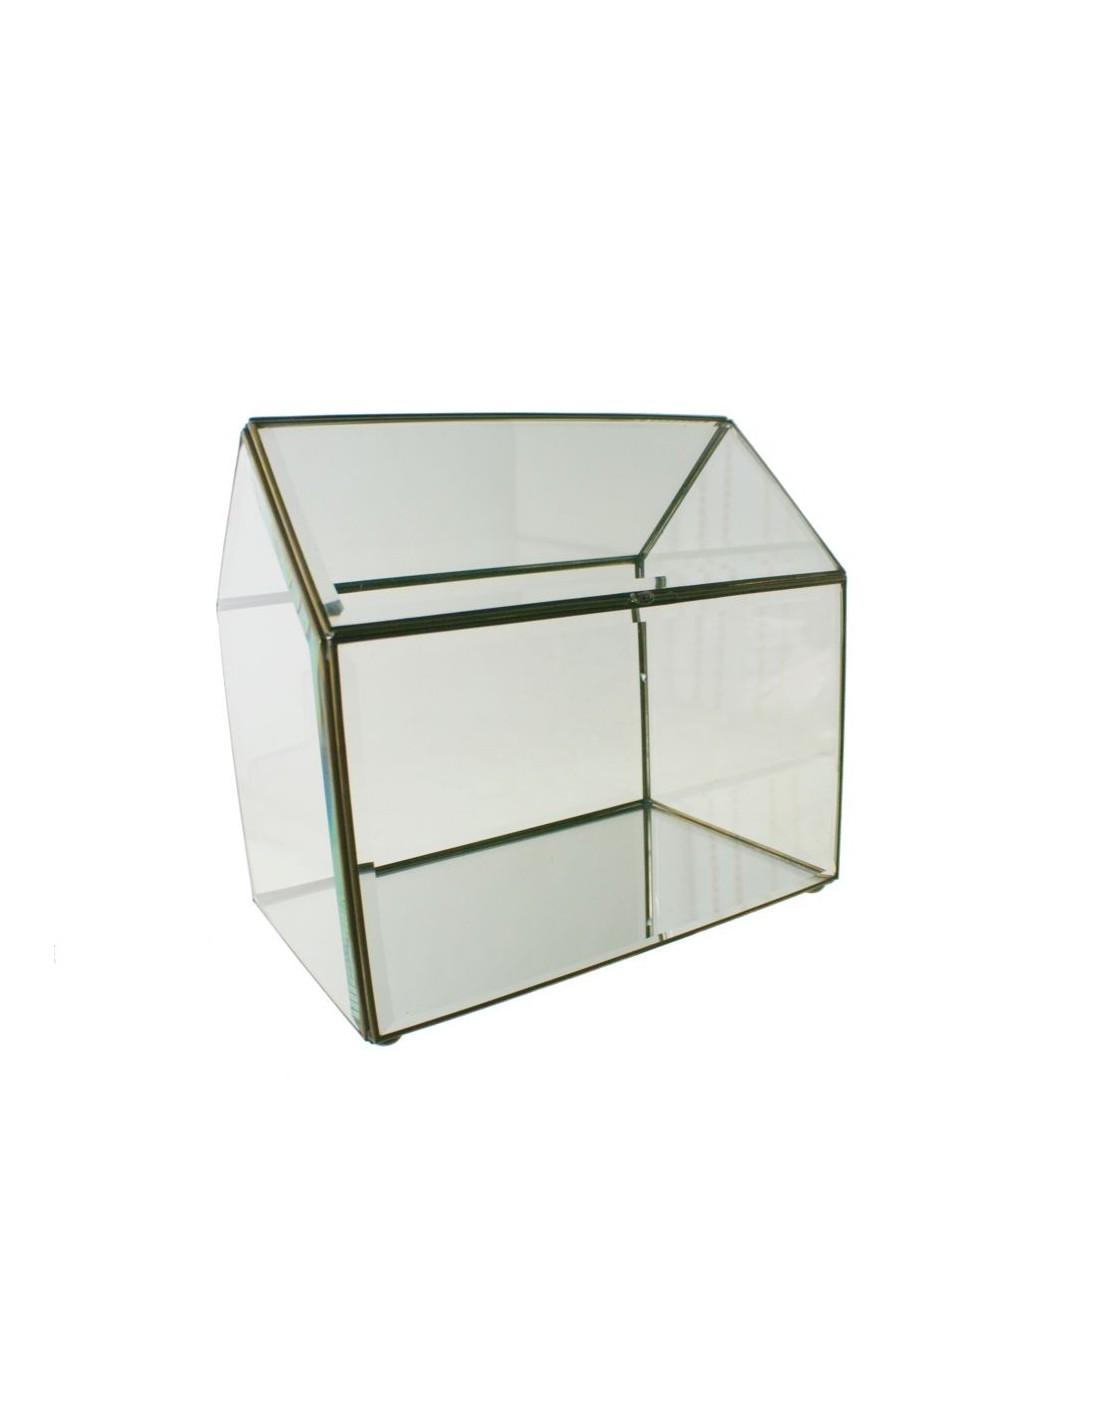 Urna grande de cristal biselado y perfil metálico con forma de casa para exposición objetos decorativos